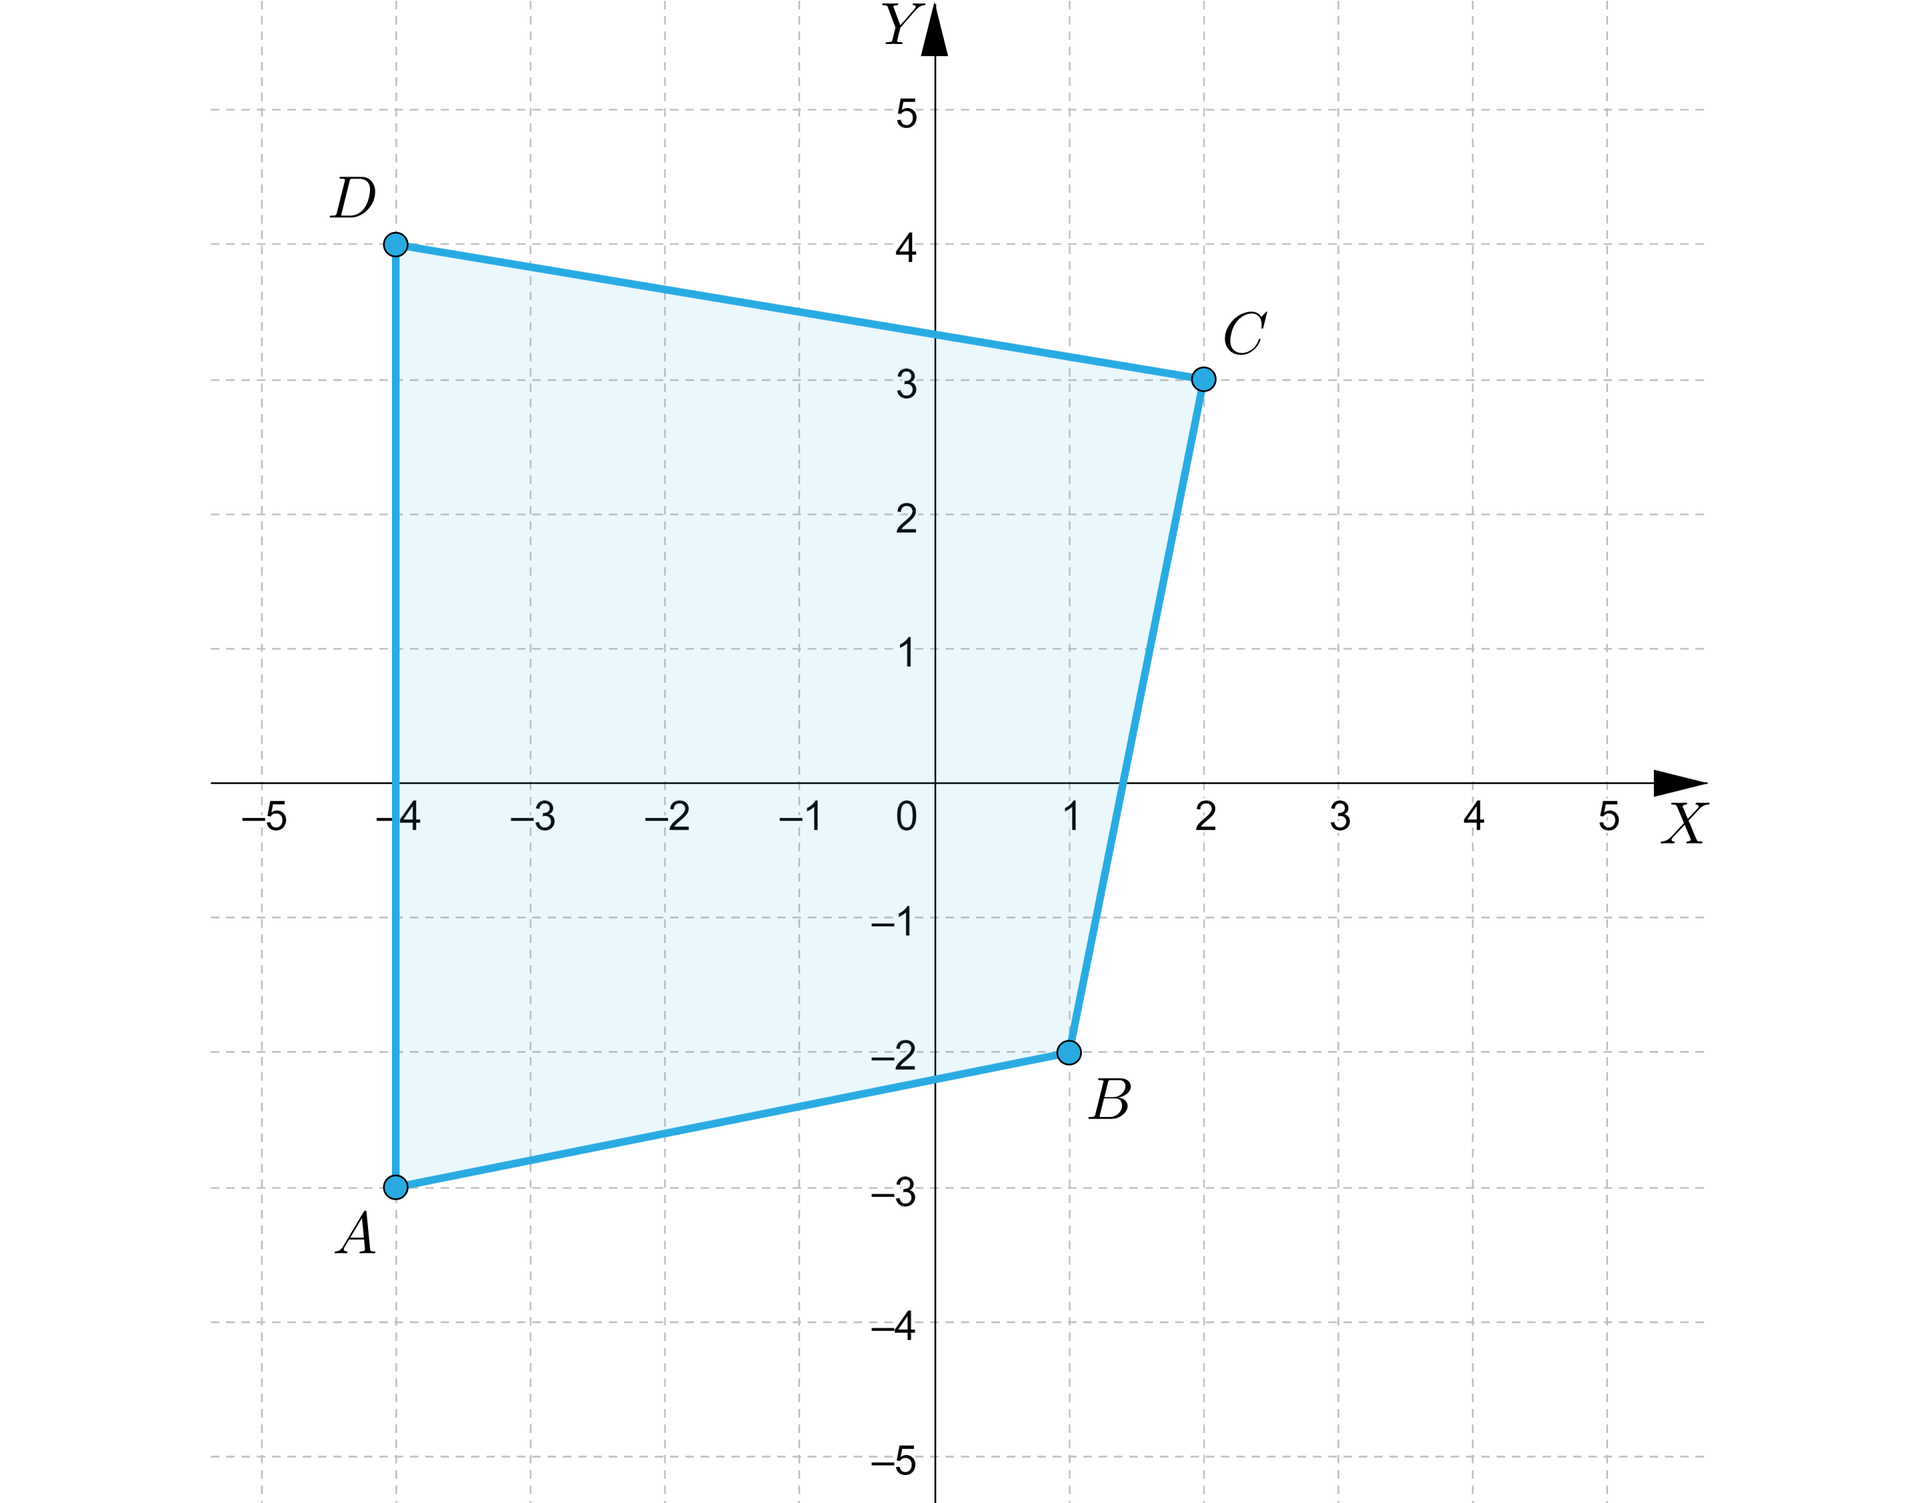 Grafika przedstawia układ współrzędnych o pionowej osi y od minus 5 do 5 i poziomej osi x od minus 5 do pięciu. Na płaszczyźnie znajduje się czworokąt o wierzchołkach: A, B, C, D. Punkt A ma współrzędne: nawias, minus 4, minus 3, zamknięcie nawiasu. Punkt B ma współrzędne: nawias, 1, minus 2, zamknięcie nawiasu. Punkt C ma współrzędne: nawias, 2, 3, zamknięcie nawiasu. Punkt D ma współrzędne: nawias, minus 4, 4, zamknięcie nawiasu.